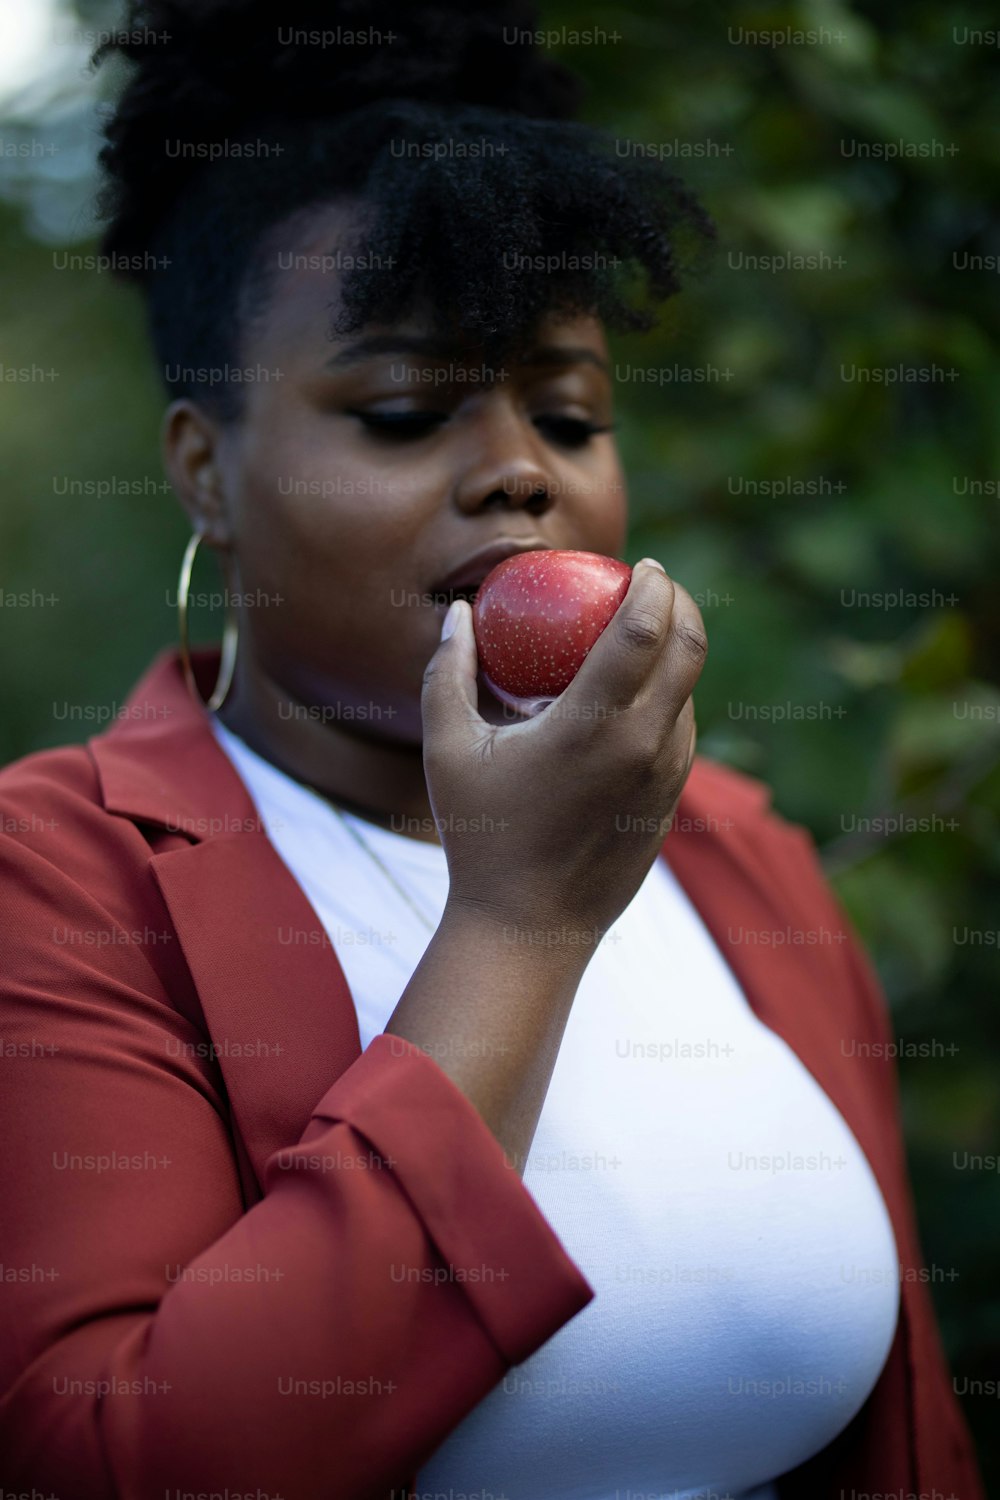 Eine Frau, die einen Apfel in der rechten Hand hält